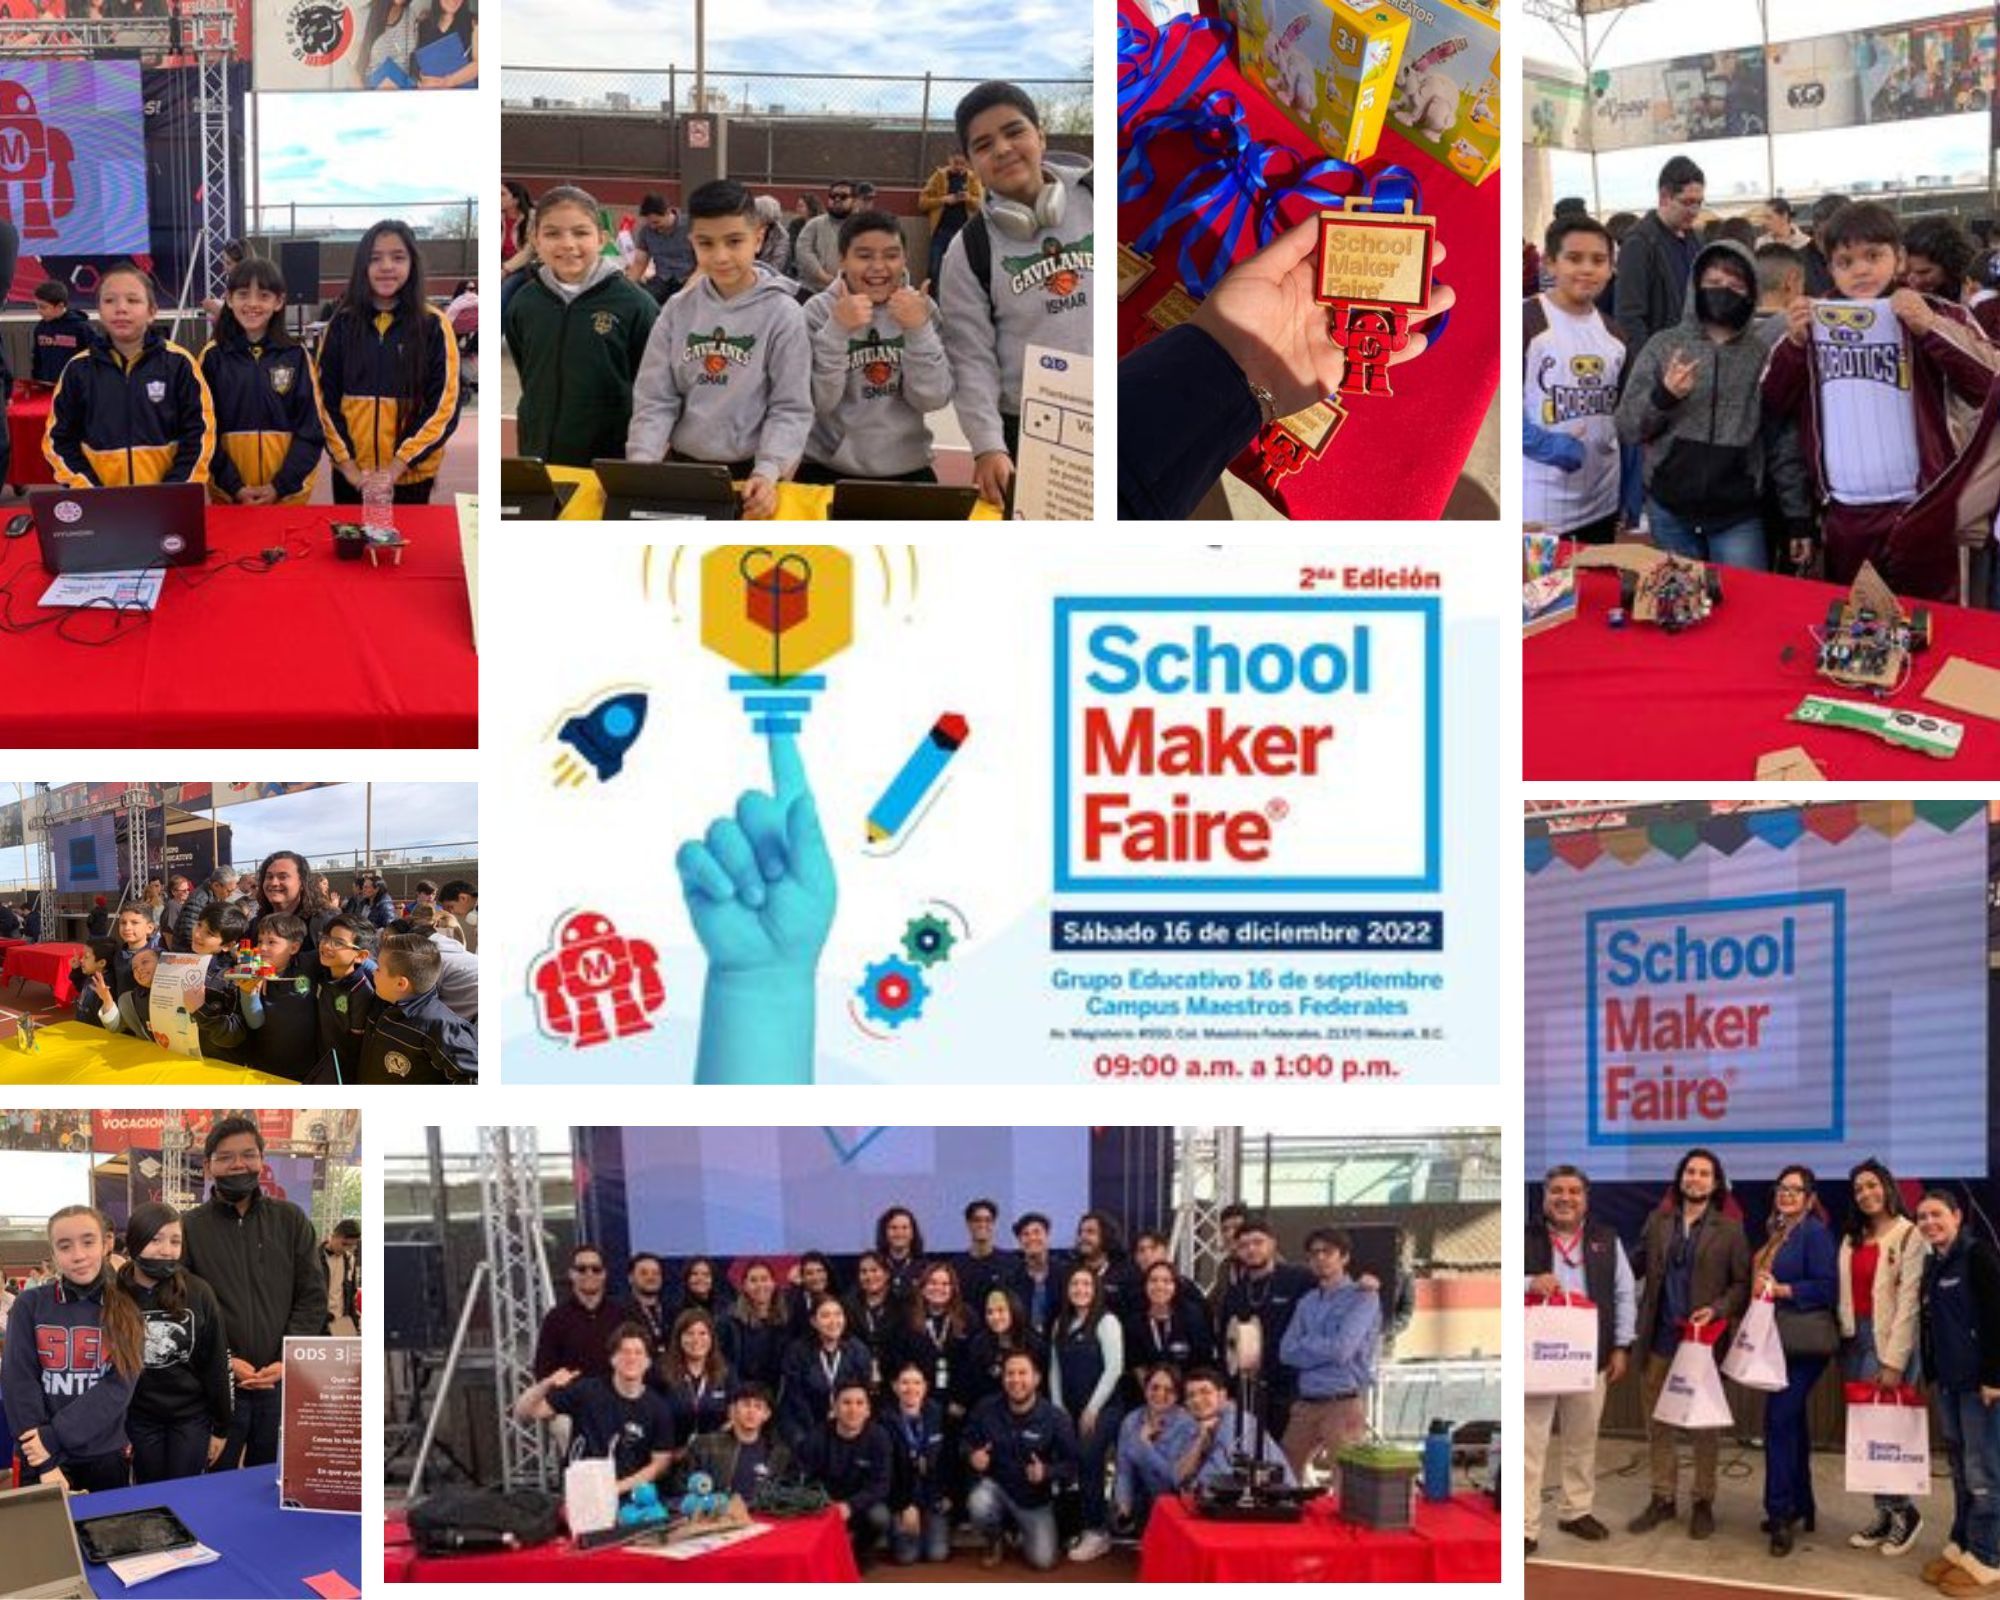 Garage celebra la 2da edición de School Maker Faire